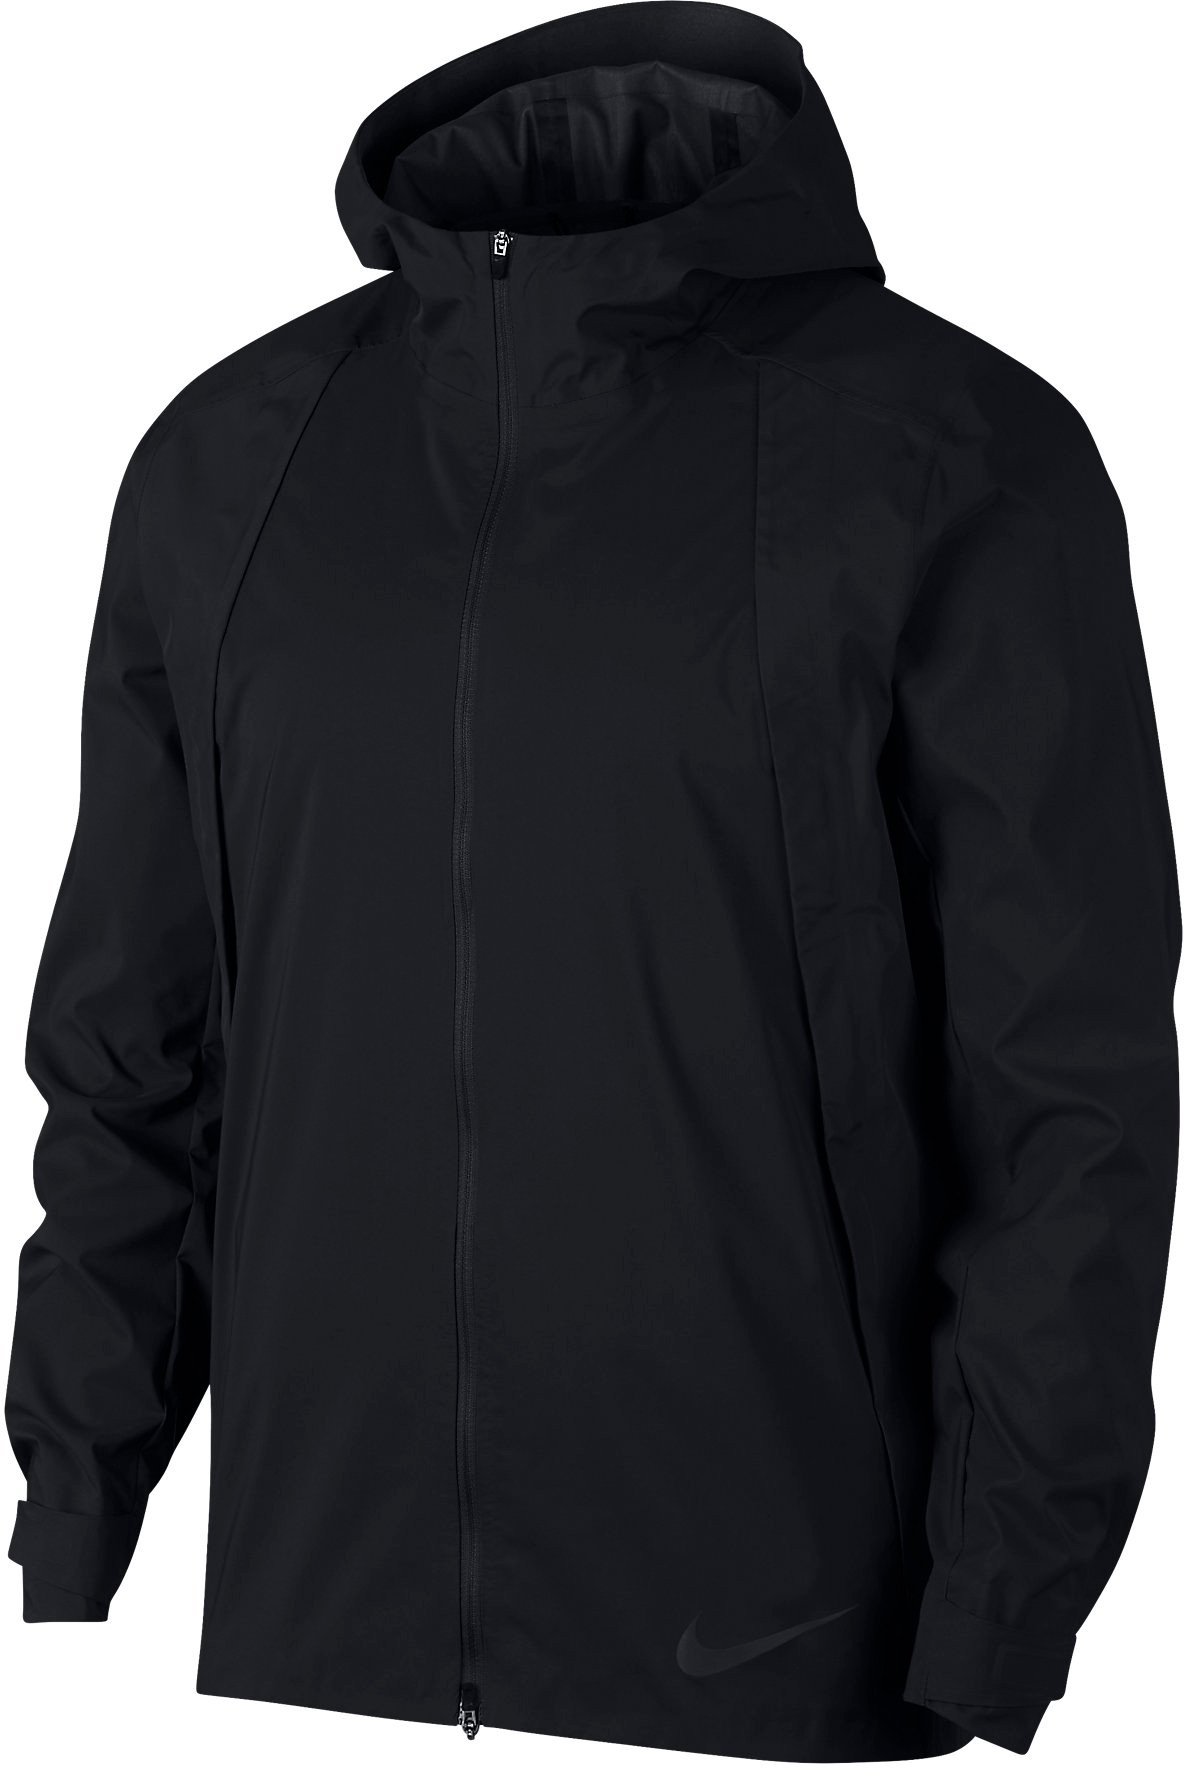 Pánská běžecká bunda s kapucí Nike Zonal Aeroshield